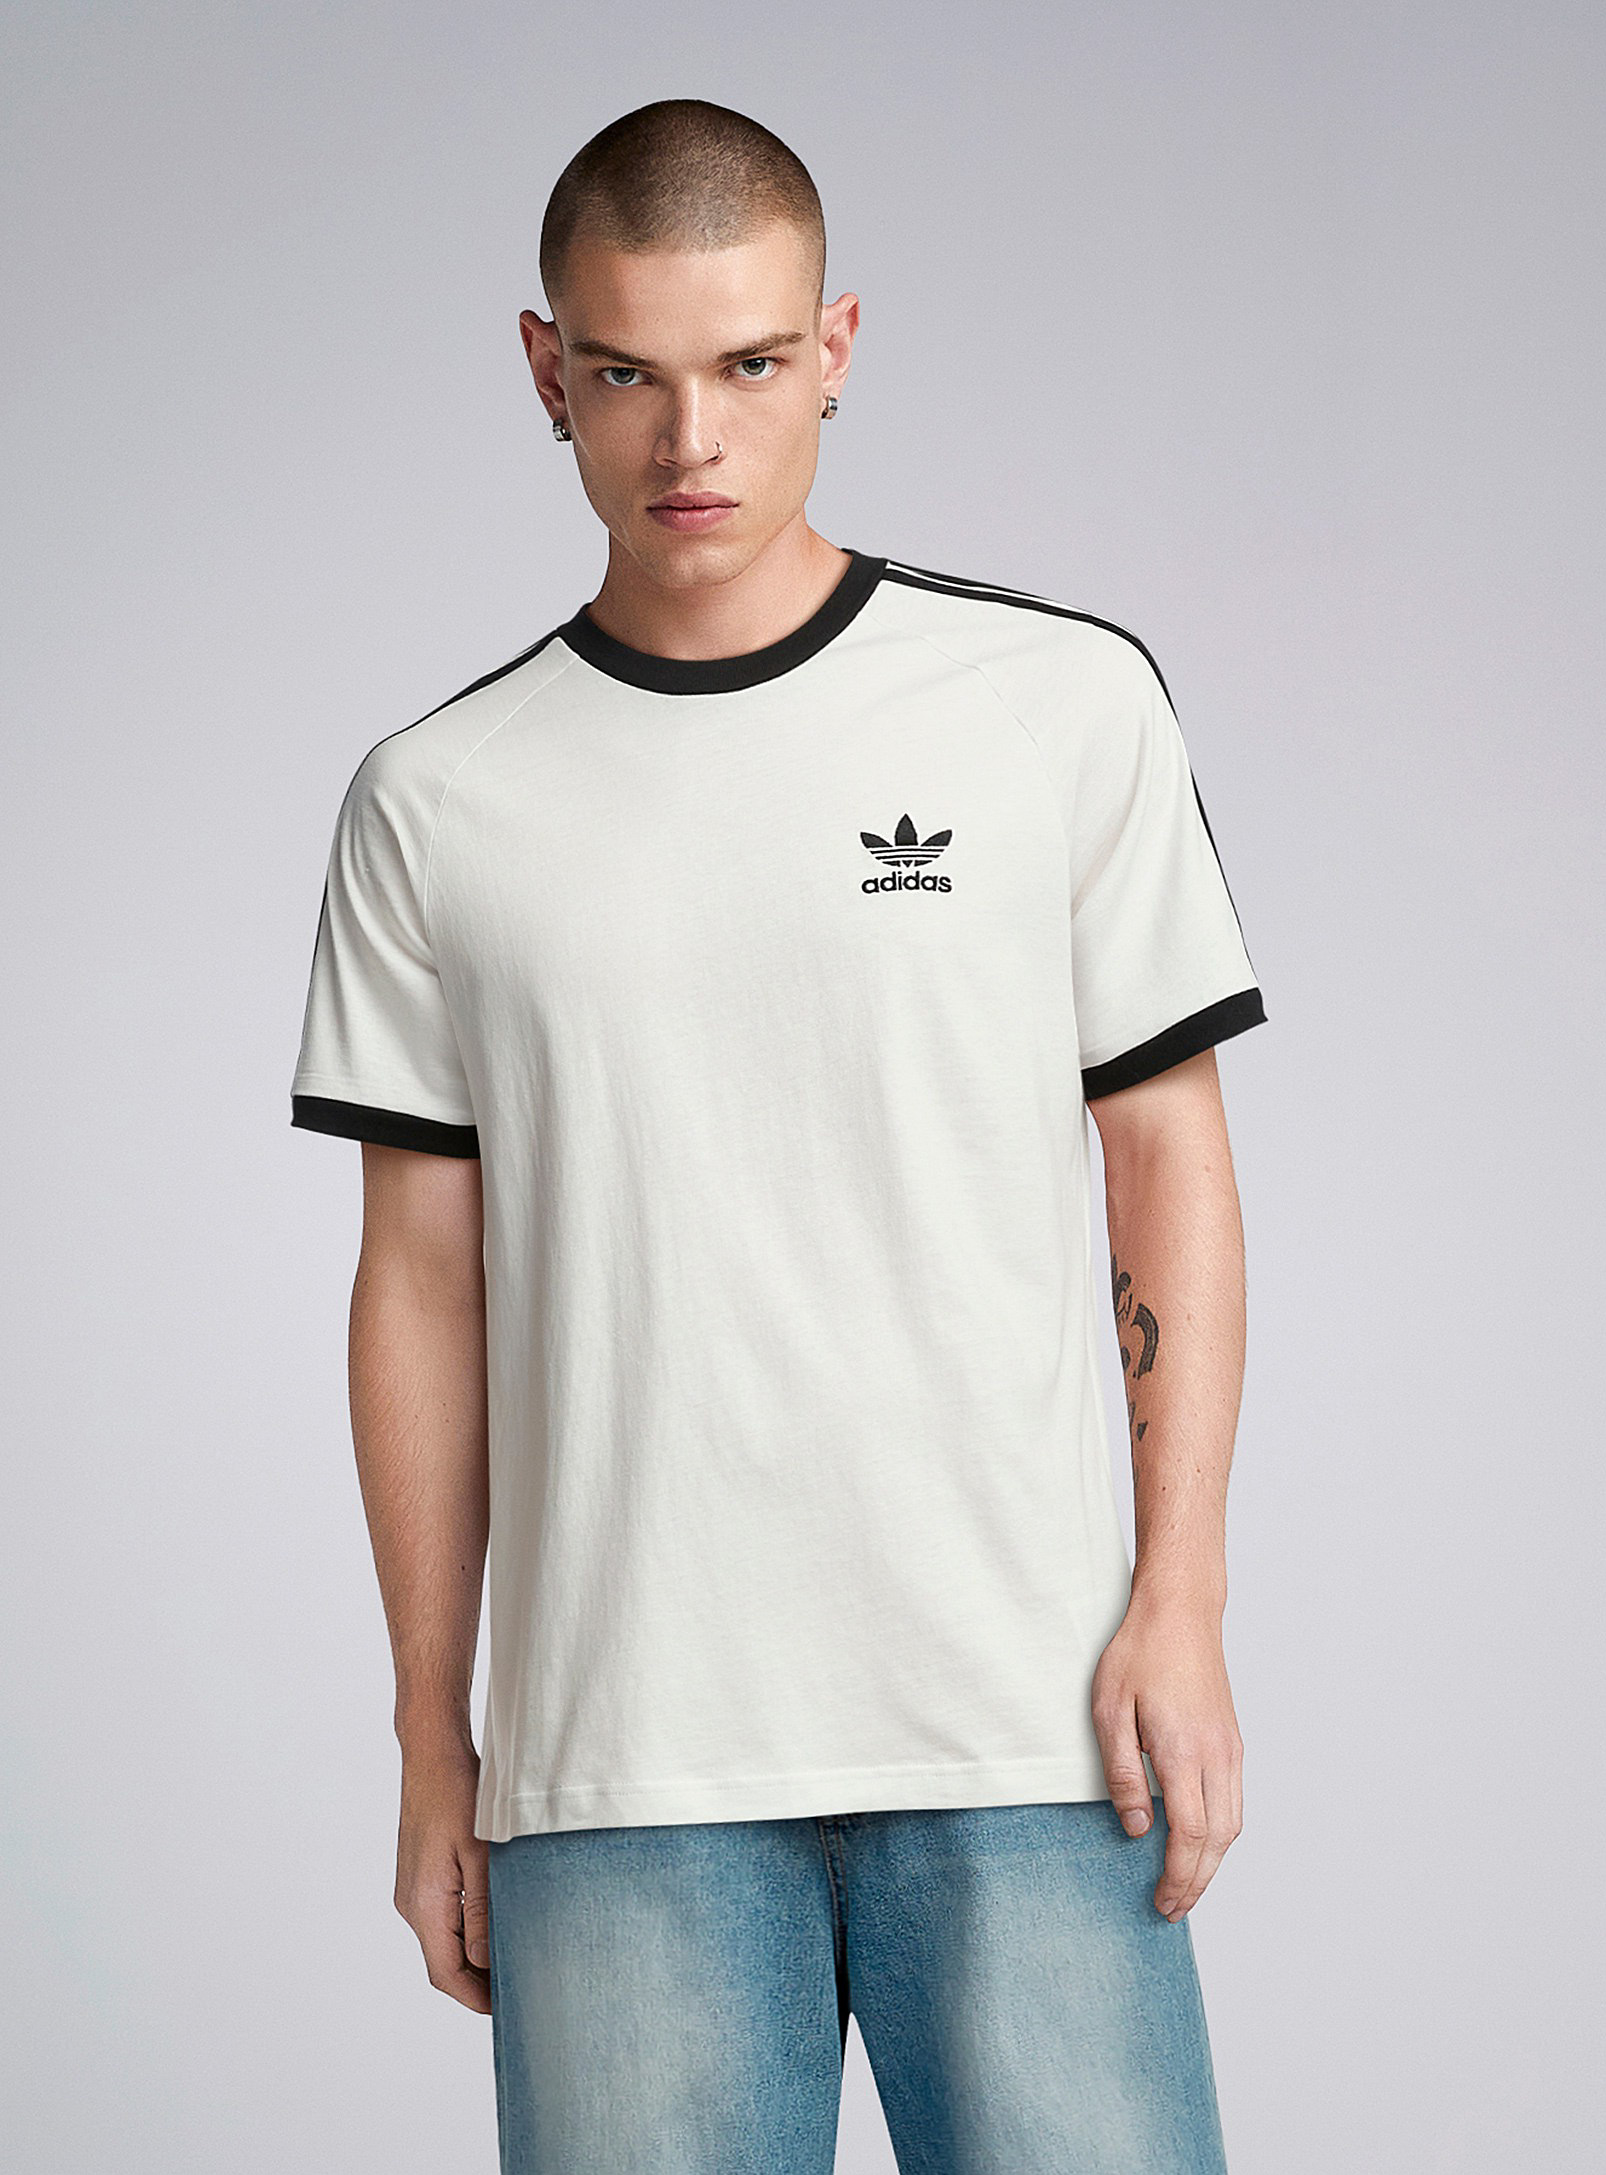 Adidas - Men's 3-stripe ringer T-shirt